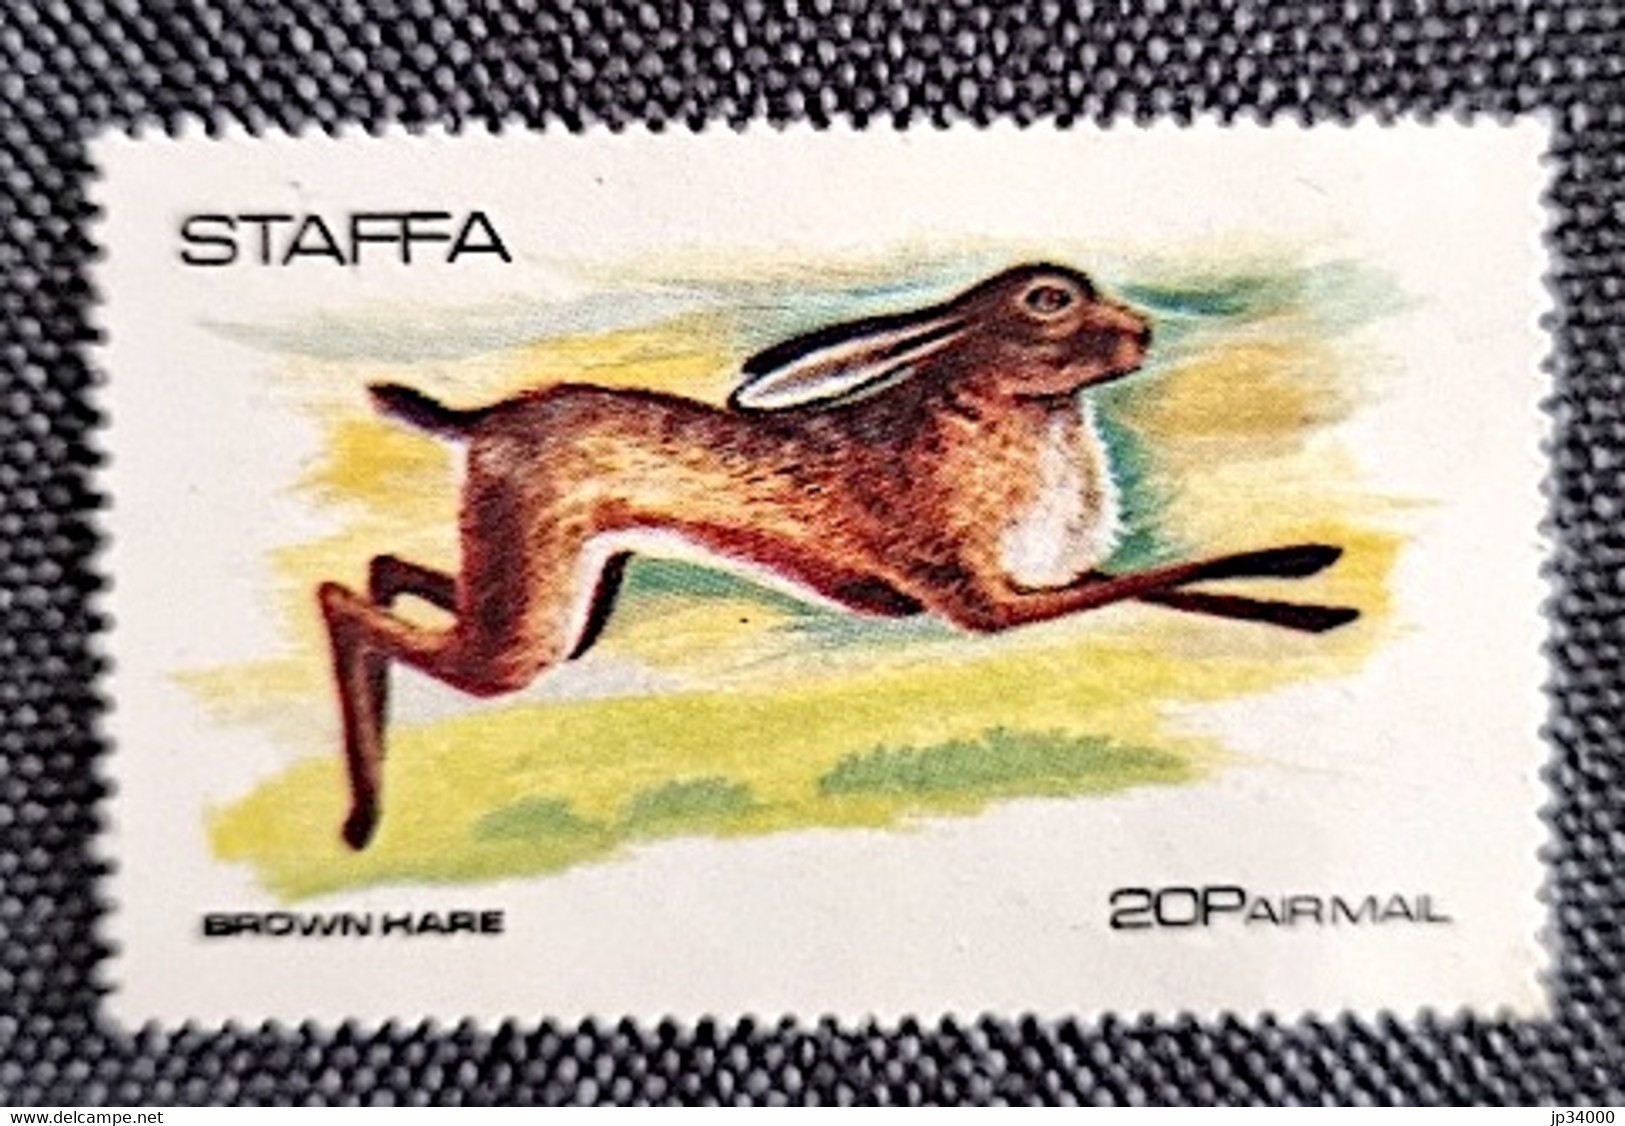 STAFFA Lapins, Lapin, Rabbit, Conejo. (1 Valeur Dentelée.) ** Neuf Sans Charnière - Conejos